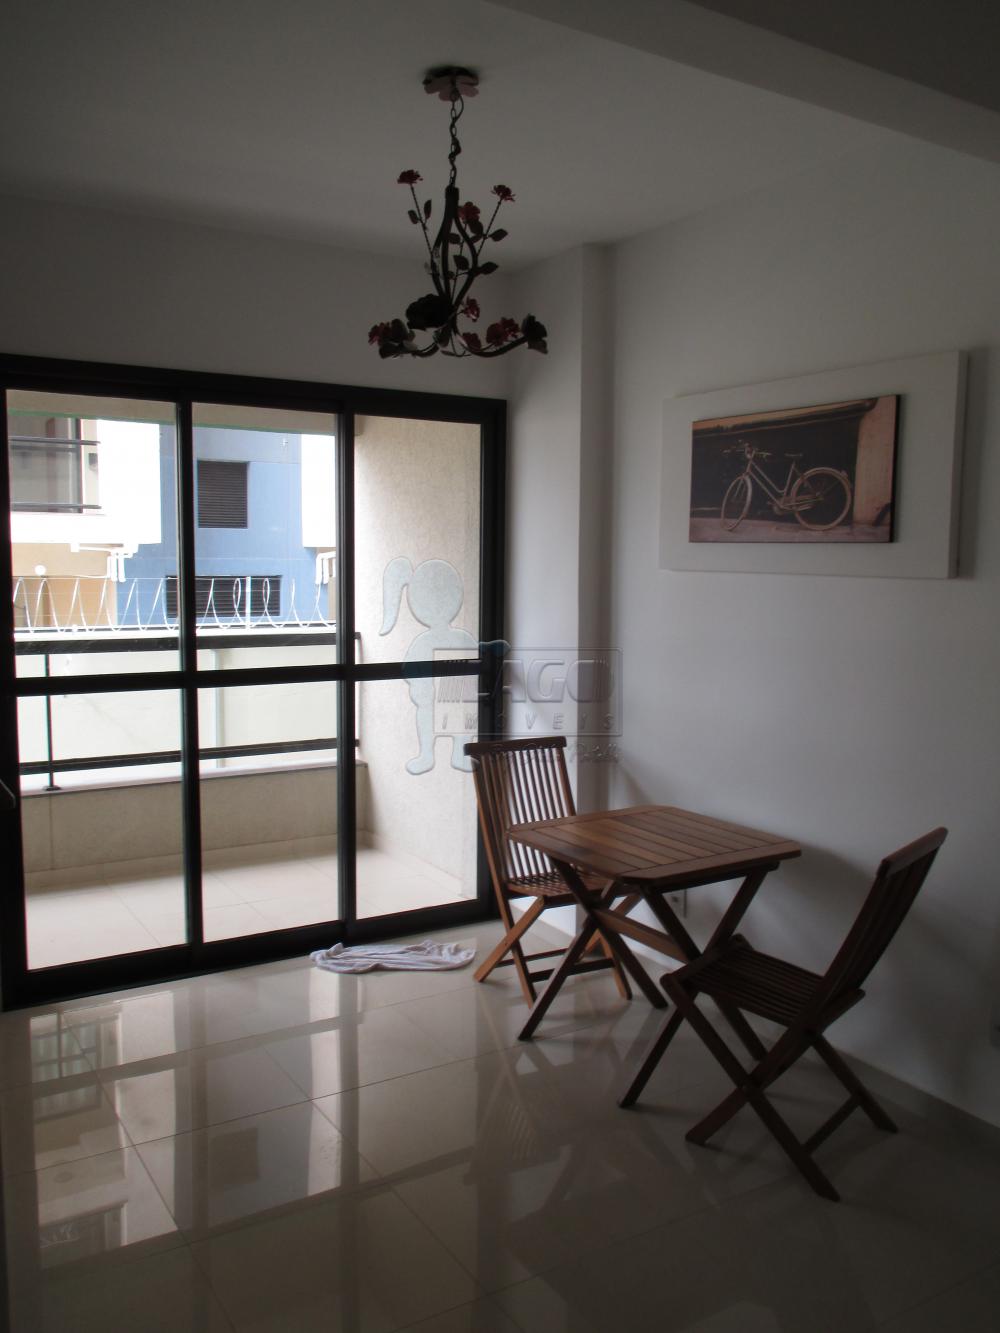 Alugar Apartamentos / Studio/Kitnet em Ribeirão Preto R$ 1.000,00 - Foto 13